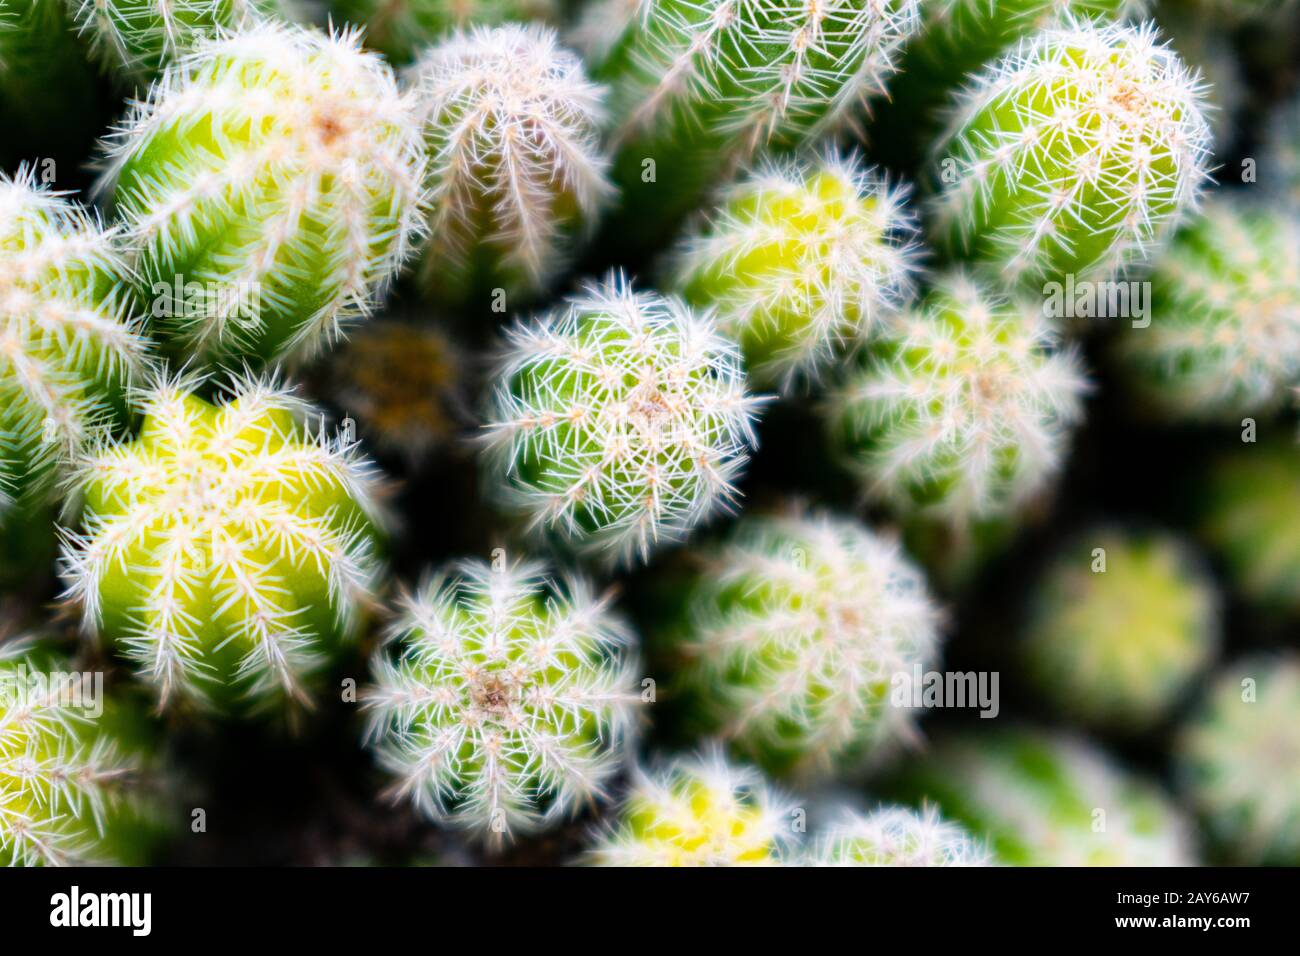 Vista dall'alto astratta del cactus delle arachidi (Echinopsis chamaecereus, Chamaecereus silvestrii), messa a fuoco morbida Foto Stock